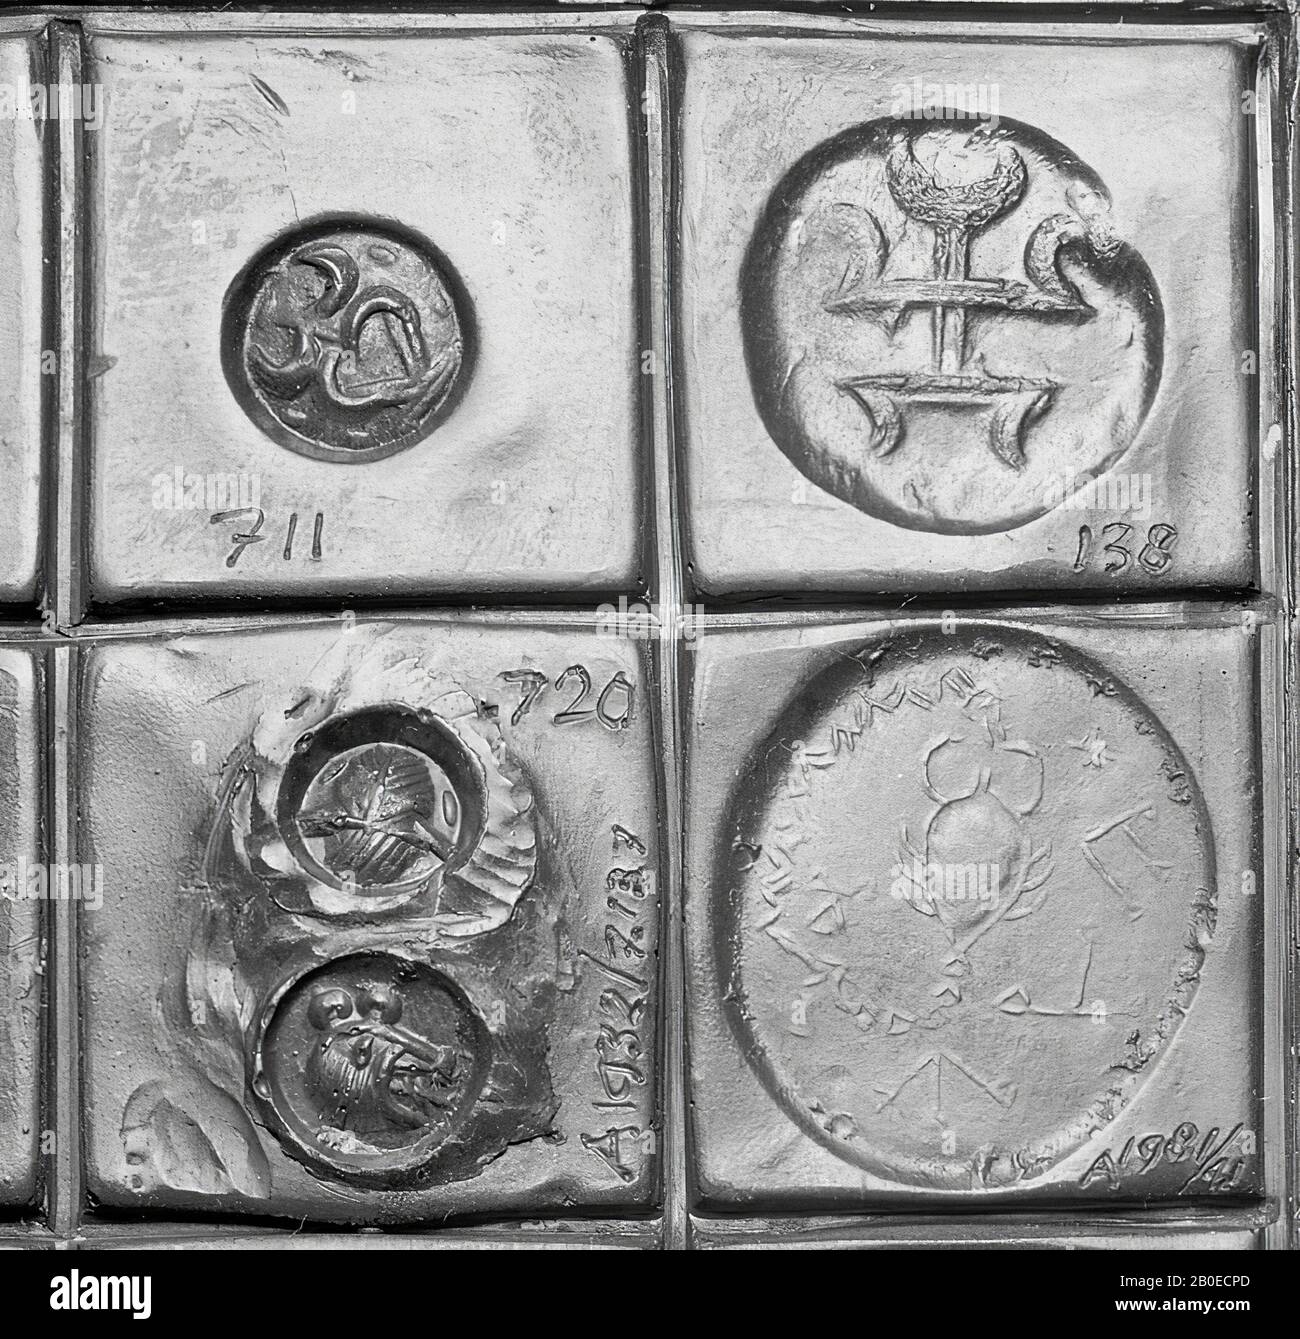 Un cachet en pierre avec une image d'une personne stylisée., Seal, Stone, hématite, D 2,5 cm, Iran Banque D'Images